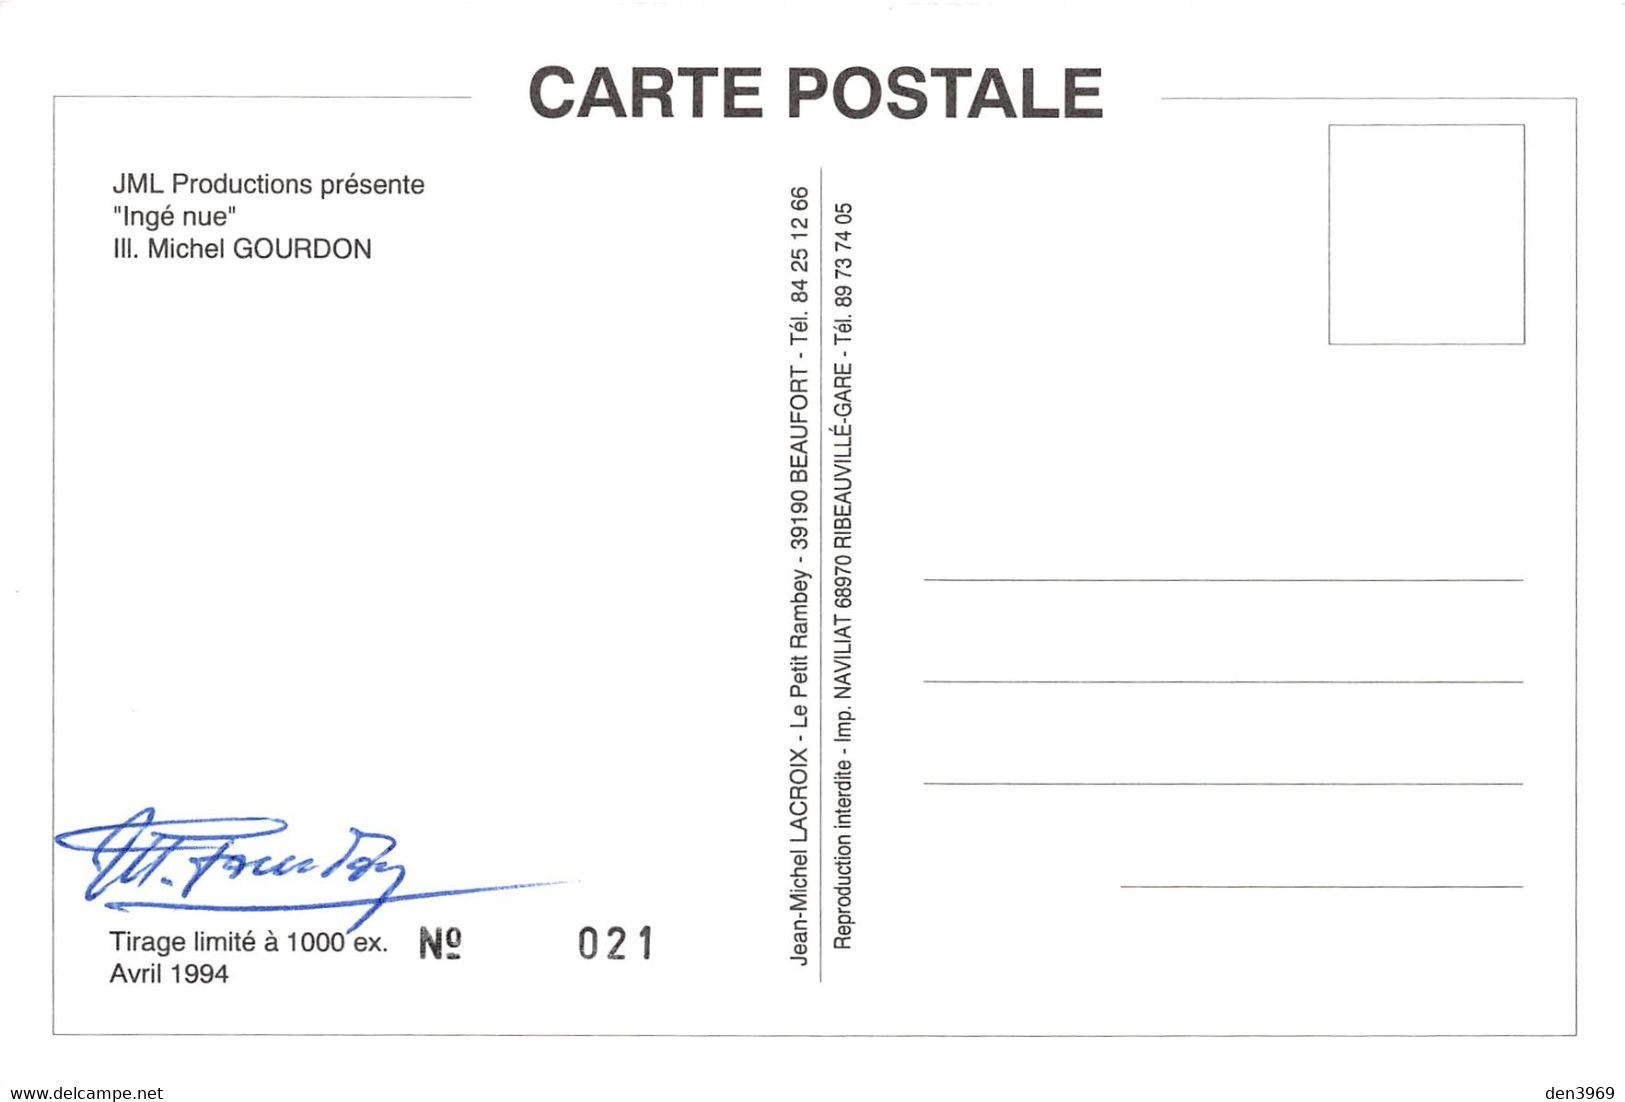 Michel GOURDON - Série de 4 CPM "Nu, Pin-up, Diable" toutes signées par l'artiste - Autographe, Dédicace (Voir 8 scans)